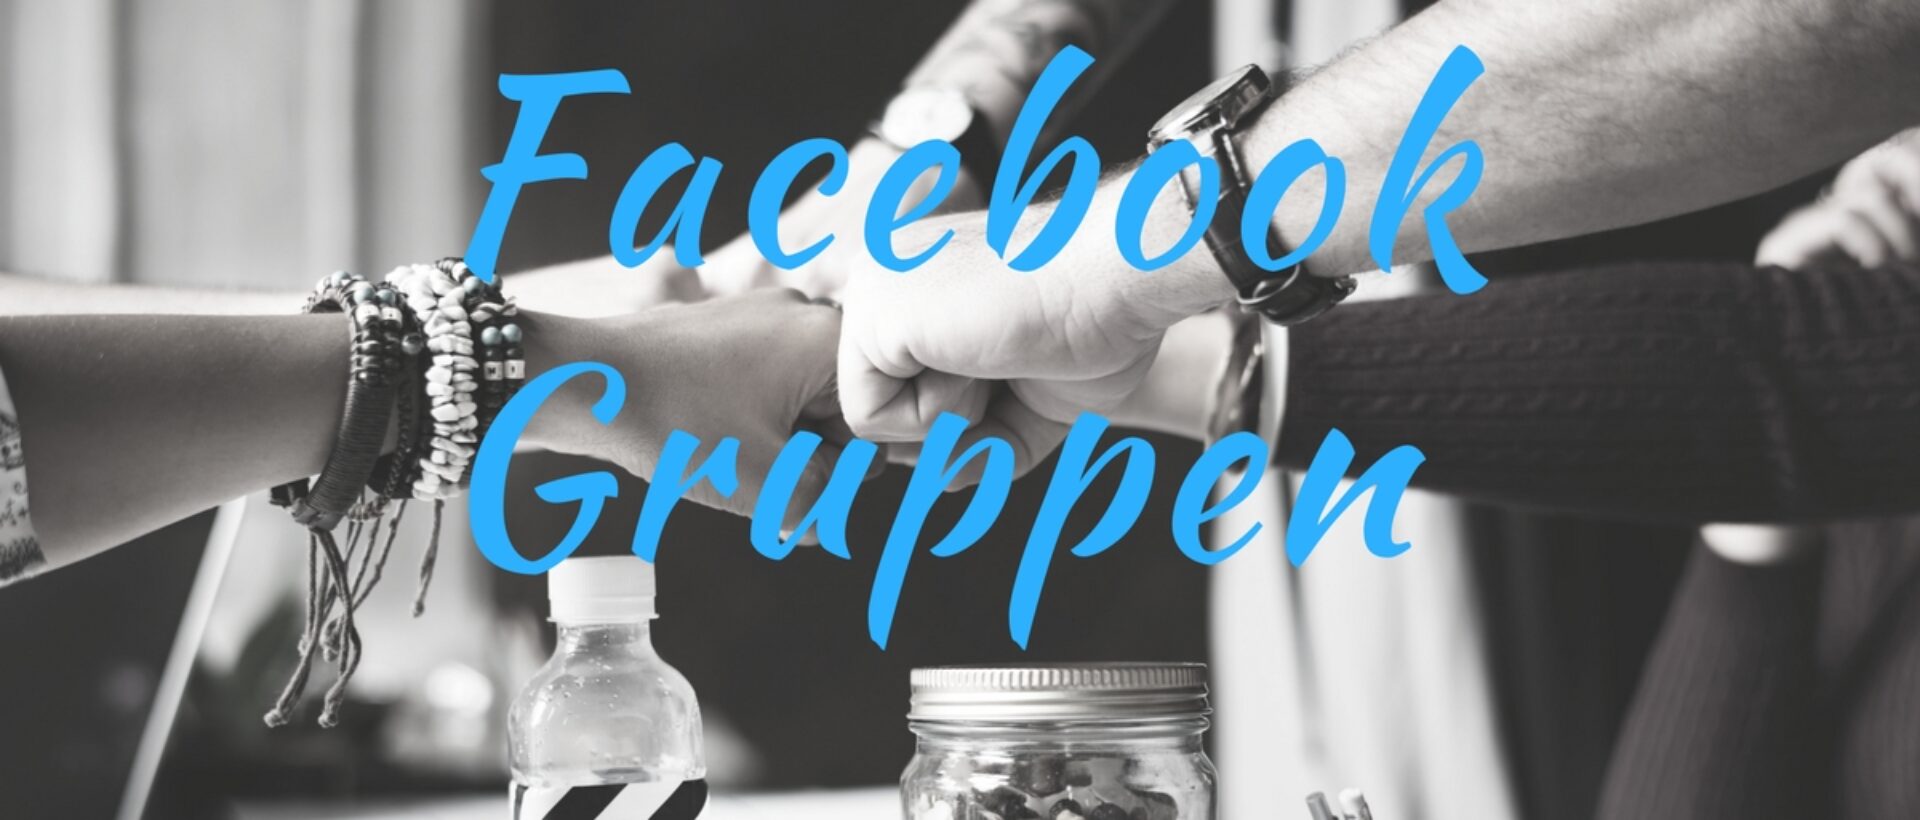 Facebook-Gruppen-für-Unternehmen-Teil2